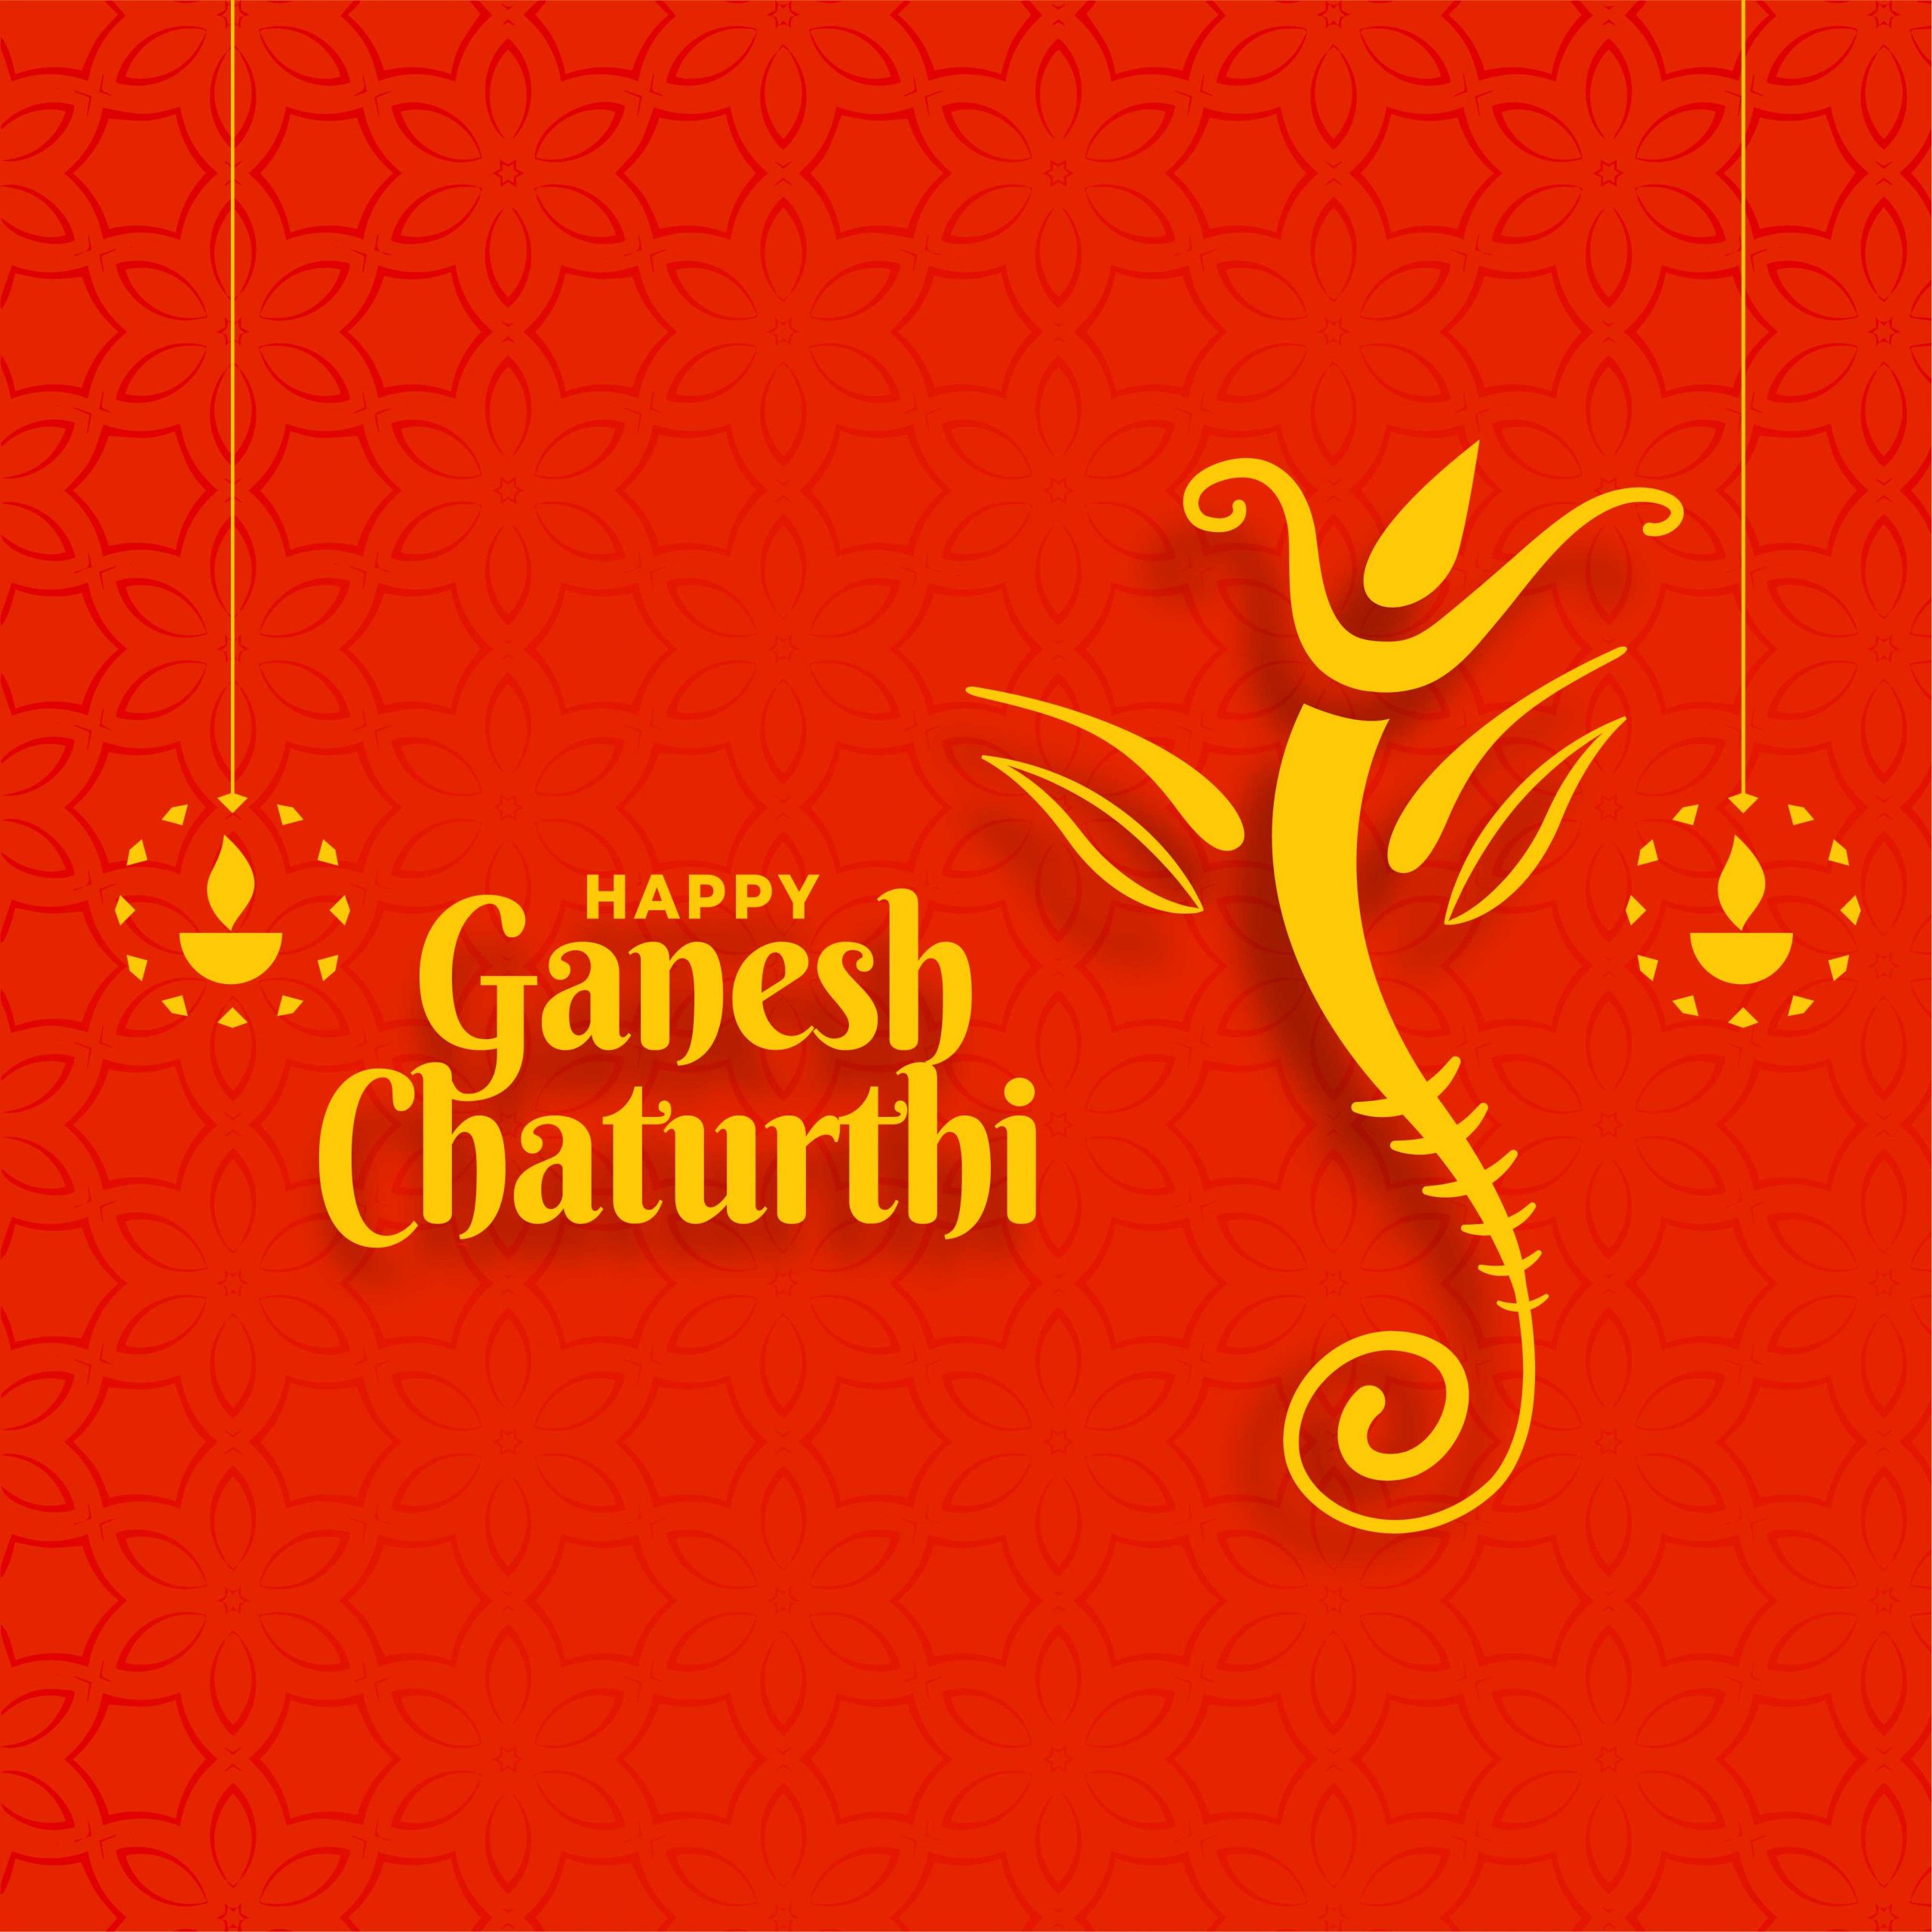 Ganesh Chaturthi wallpaper